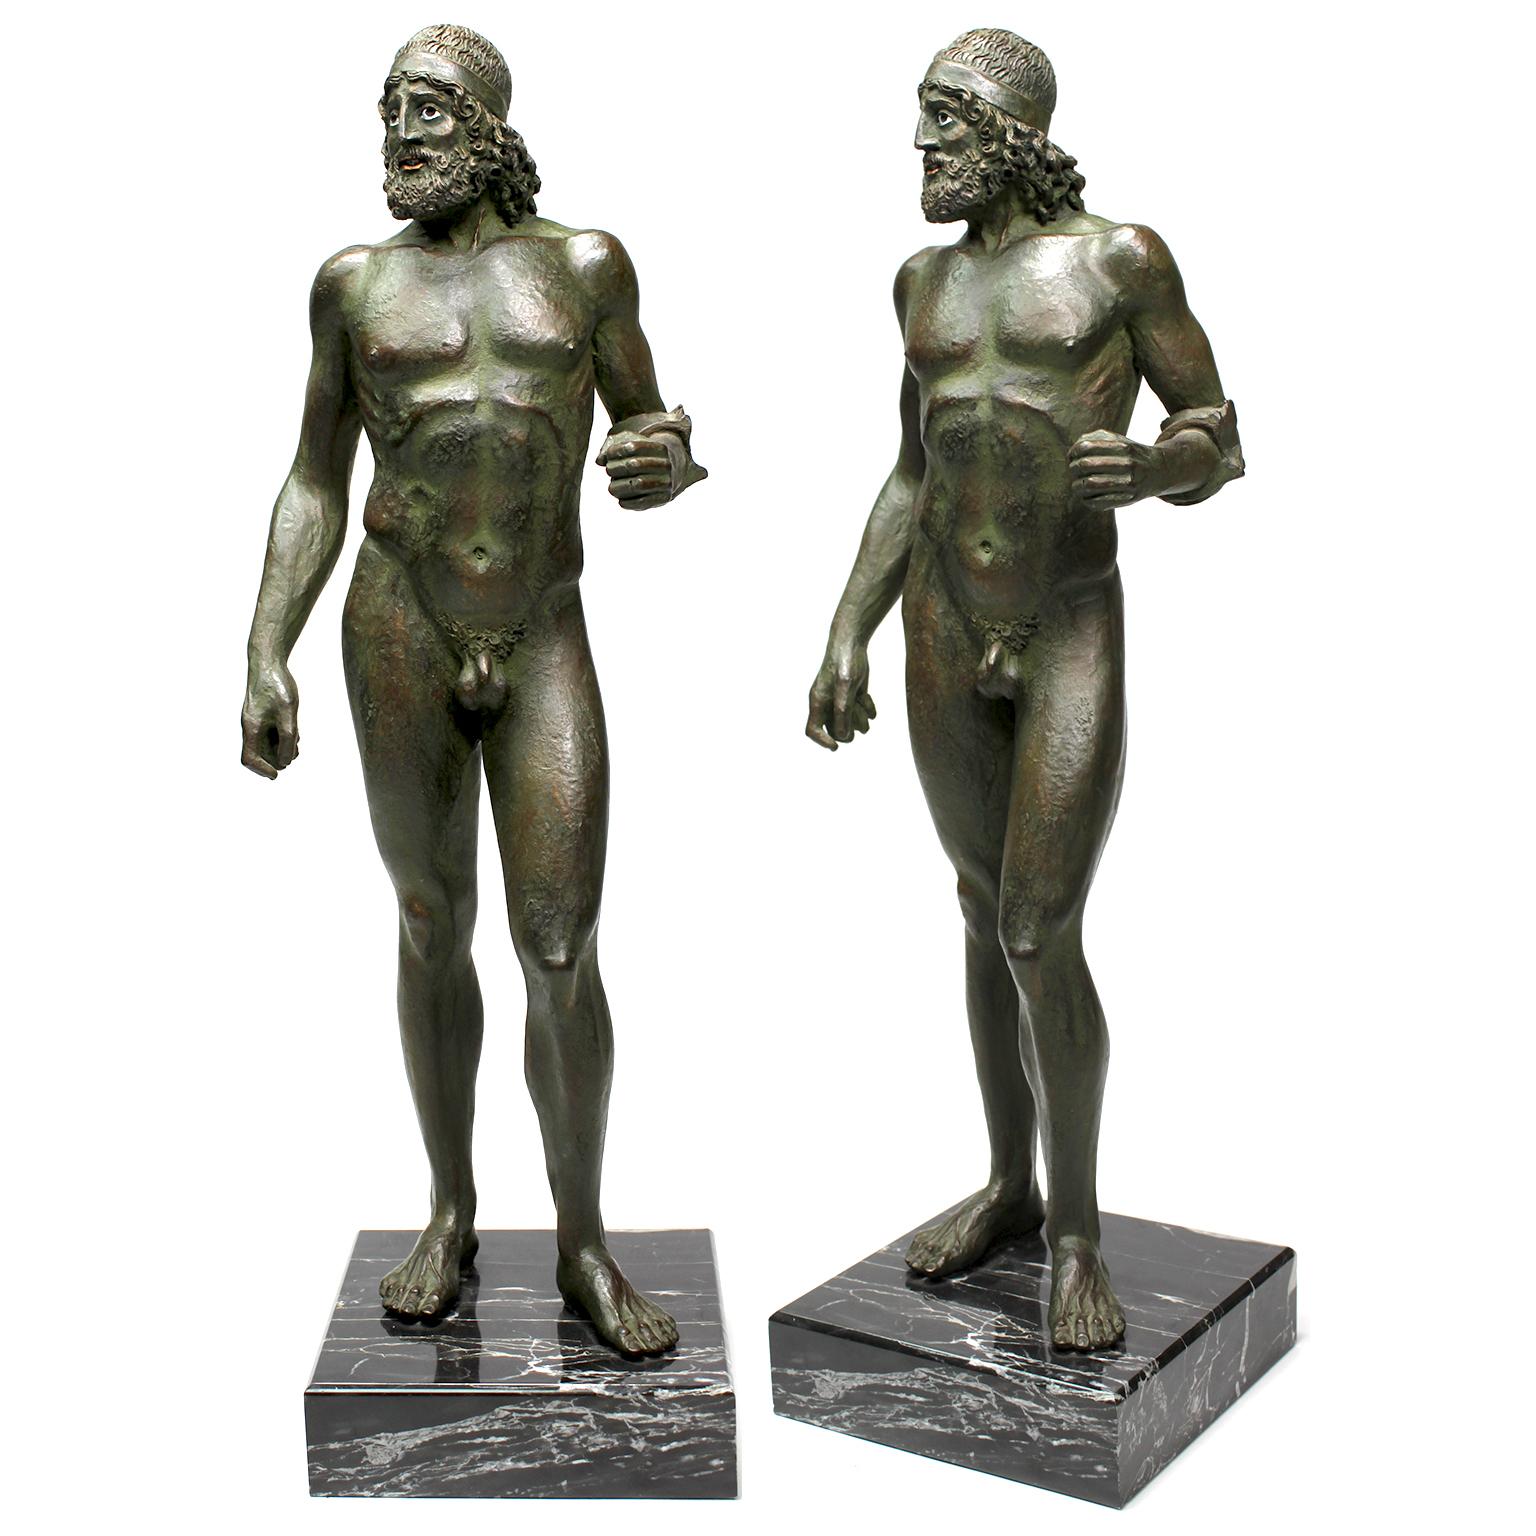 Les guerriers de Riace, une paire de figurines en cuivre et en résine coulées à froid représentant les guerriers de Riace, sont des répliques réduites des sculptures en bronze originales actuellement conservées au Museo Nazionale della Magna Grecia,